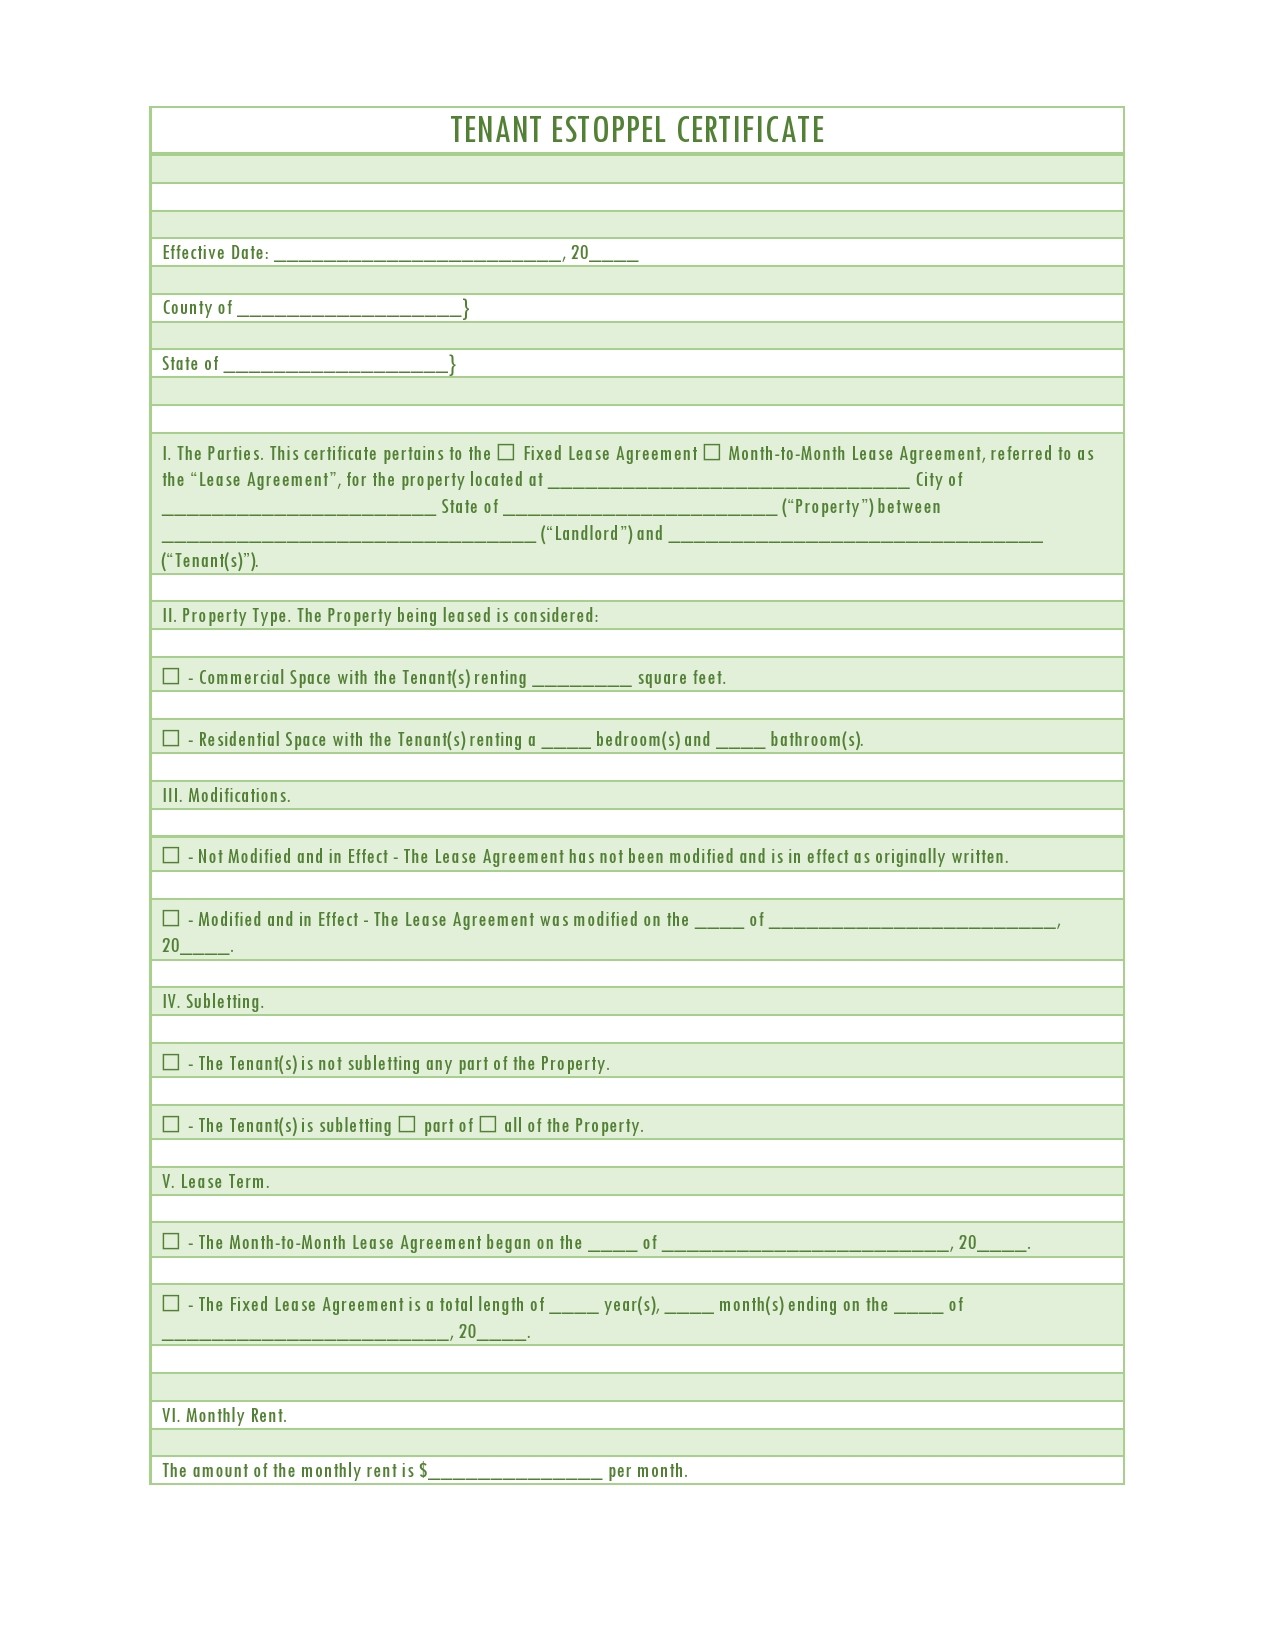 Free estoppel certificate form 40